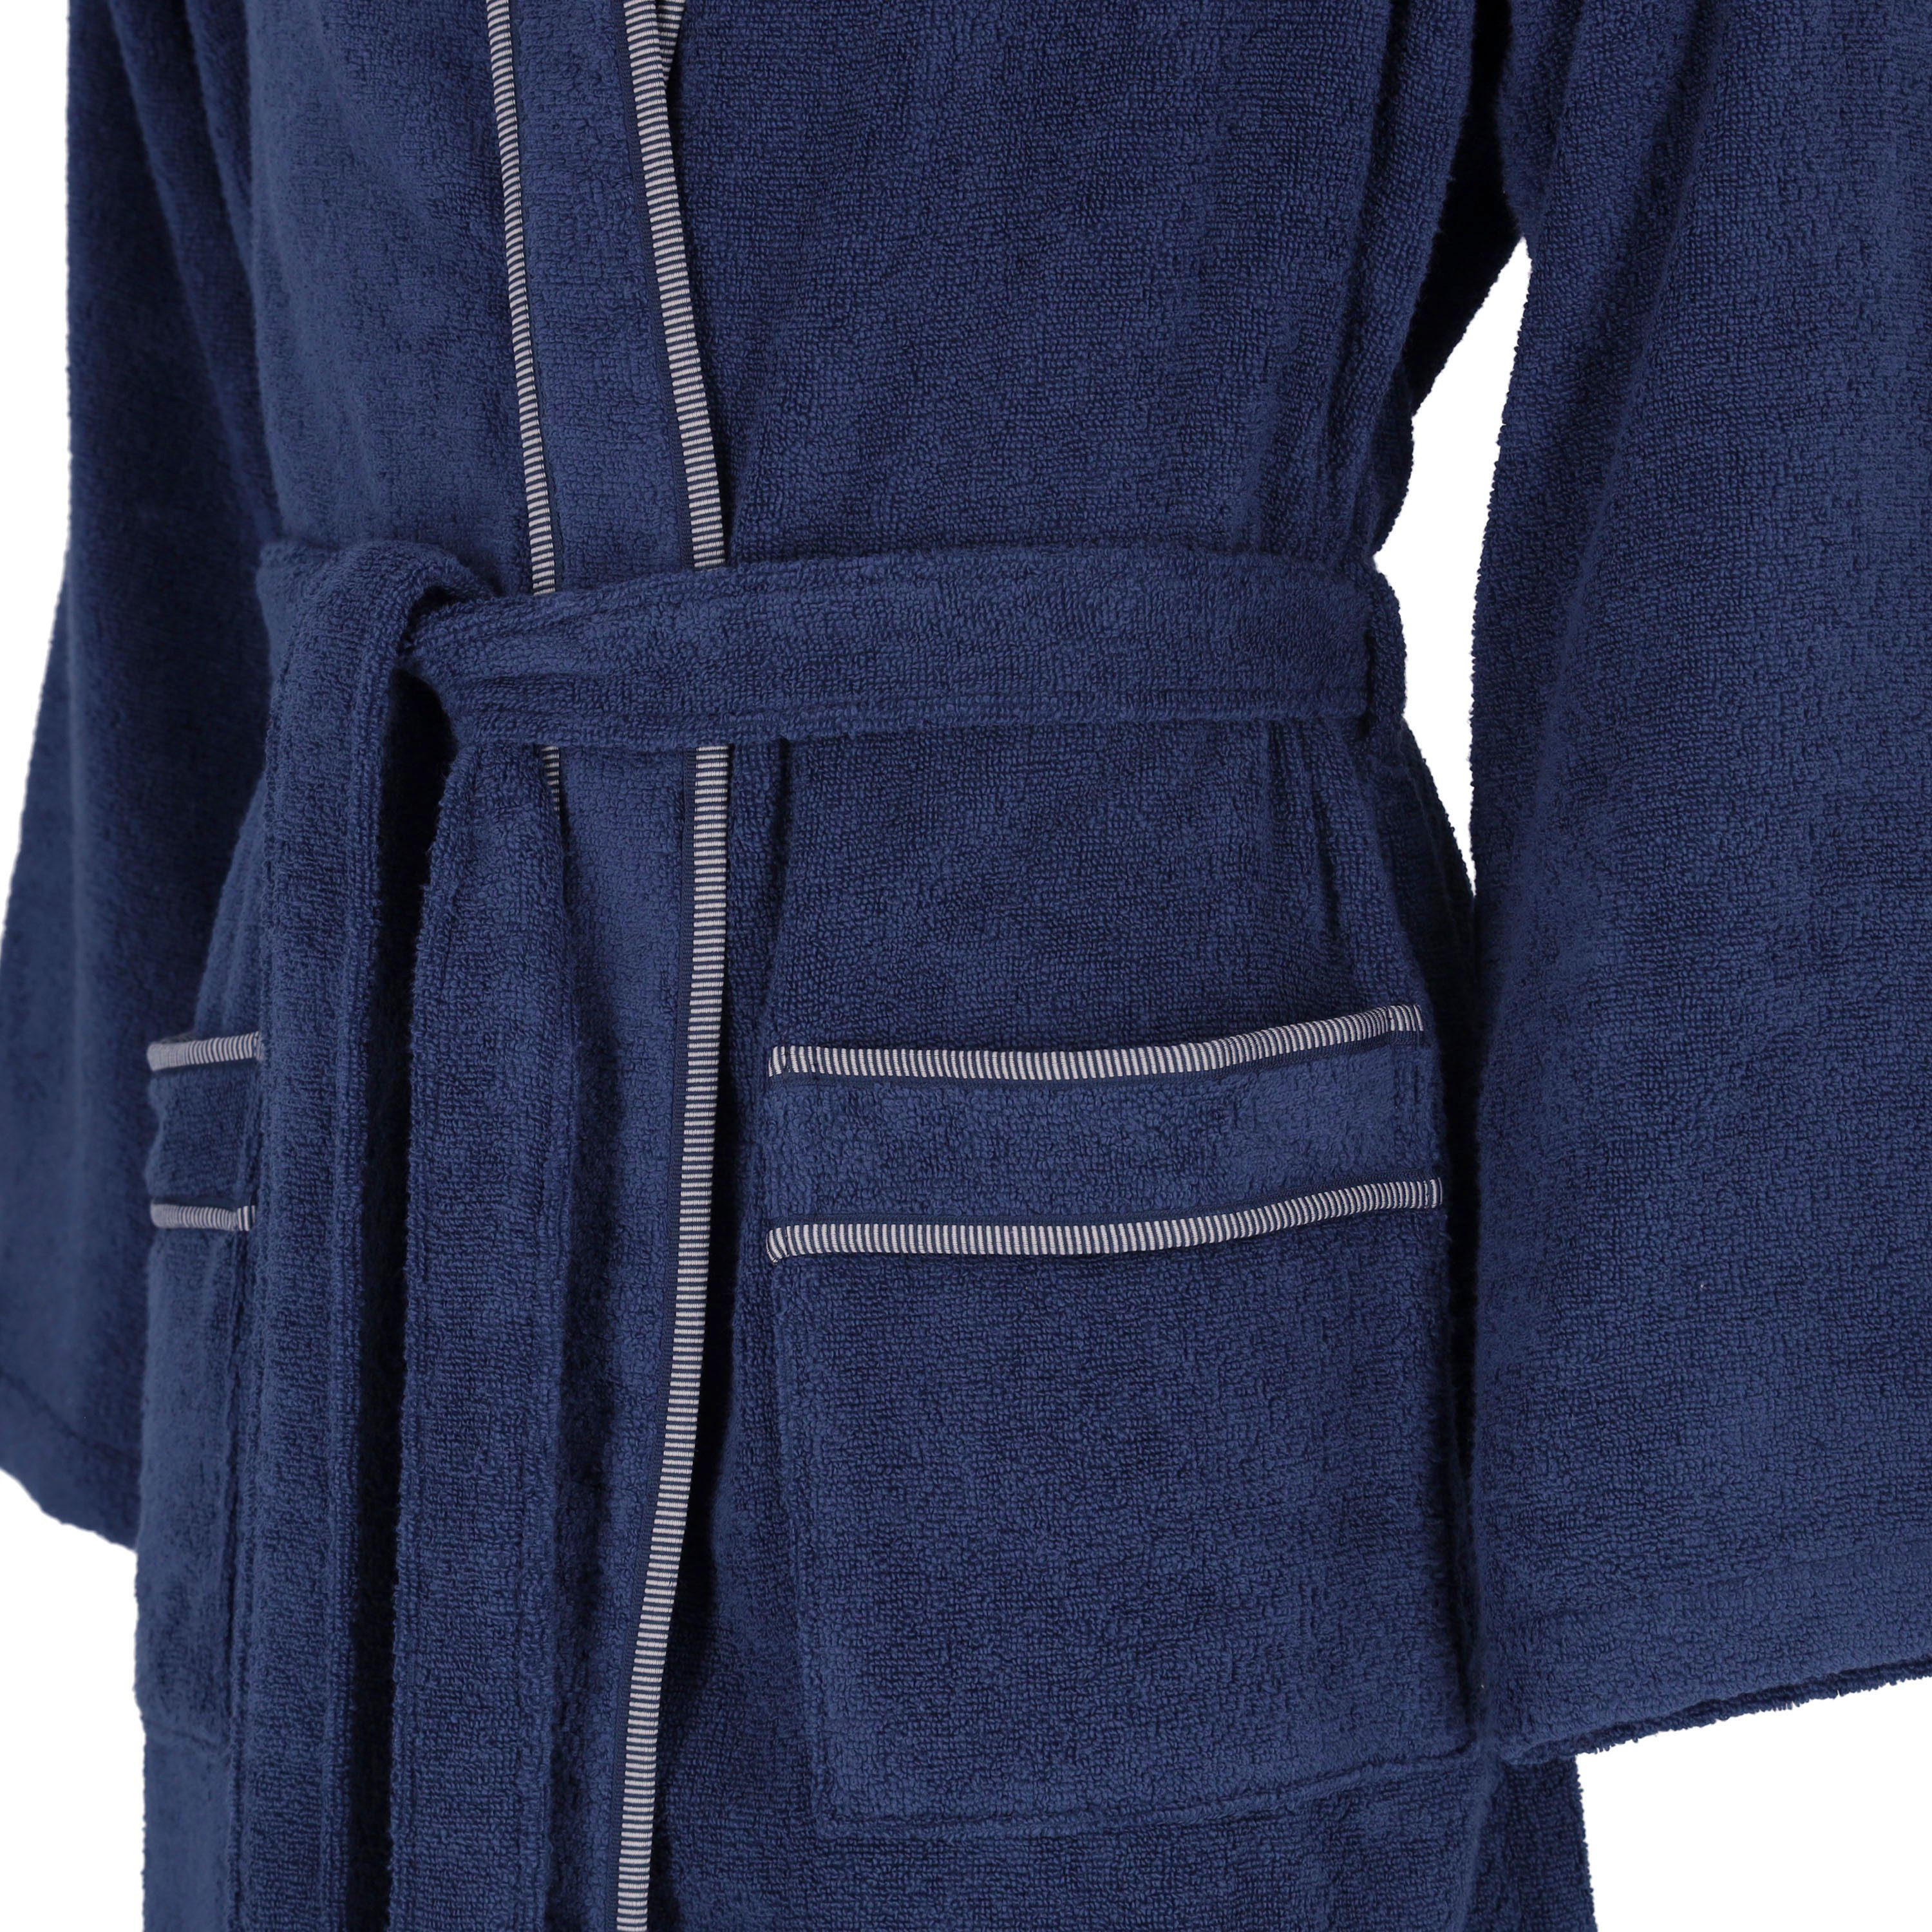 Vossen Herrenbademantel Jack, Kimono-Kragen, blau marine Langform, Gürtel Baumwolle